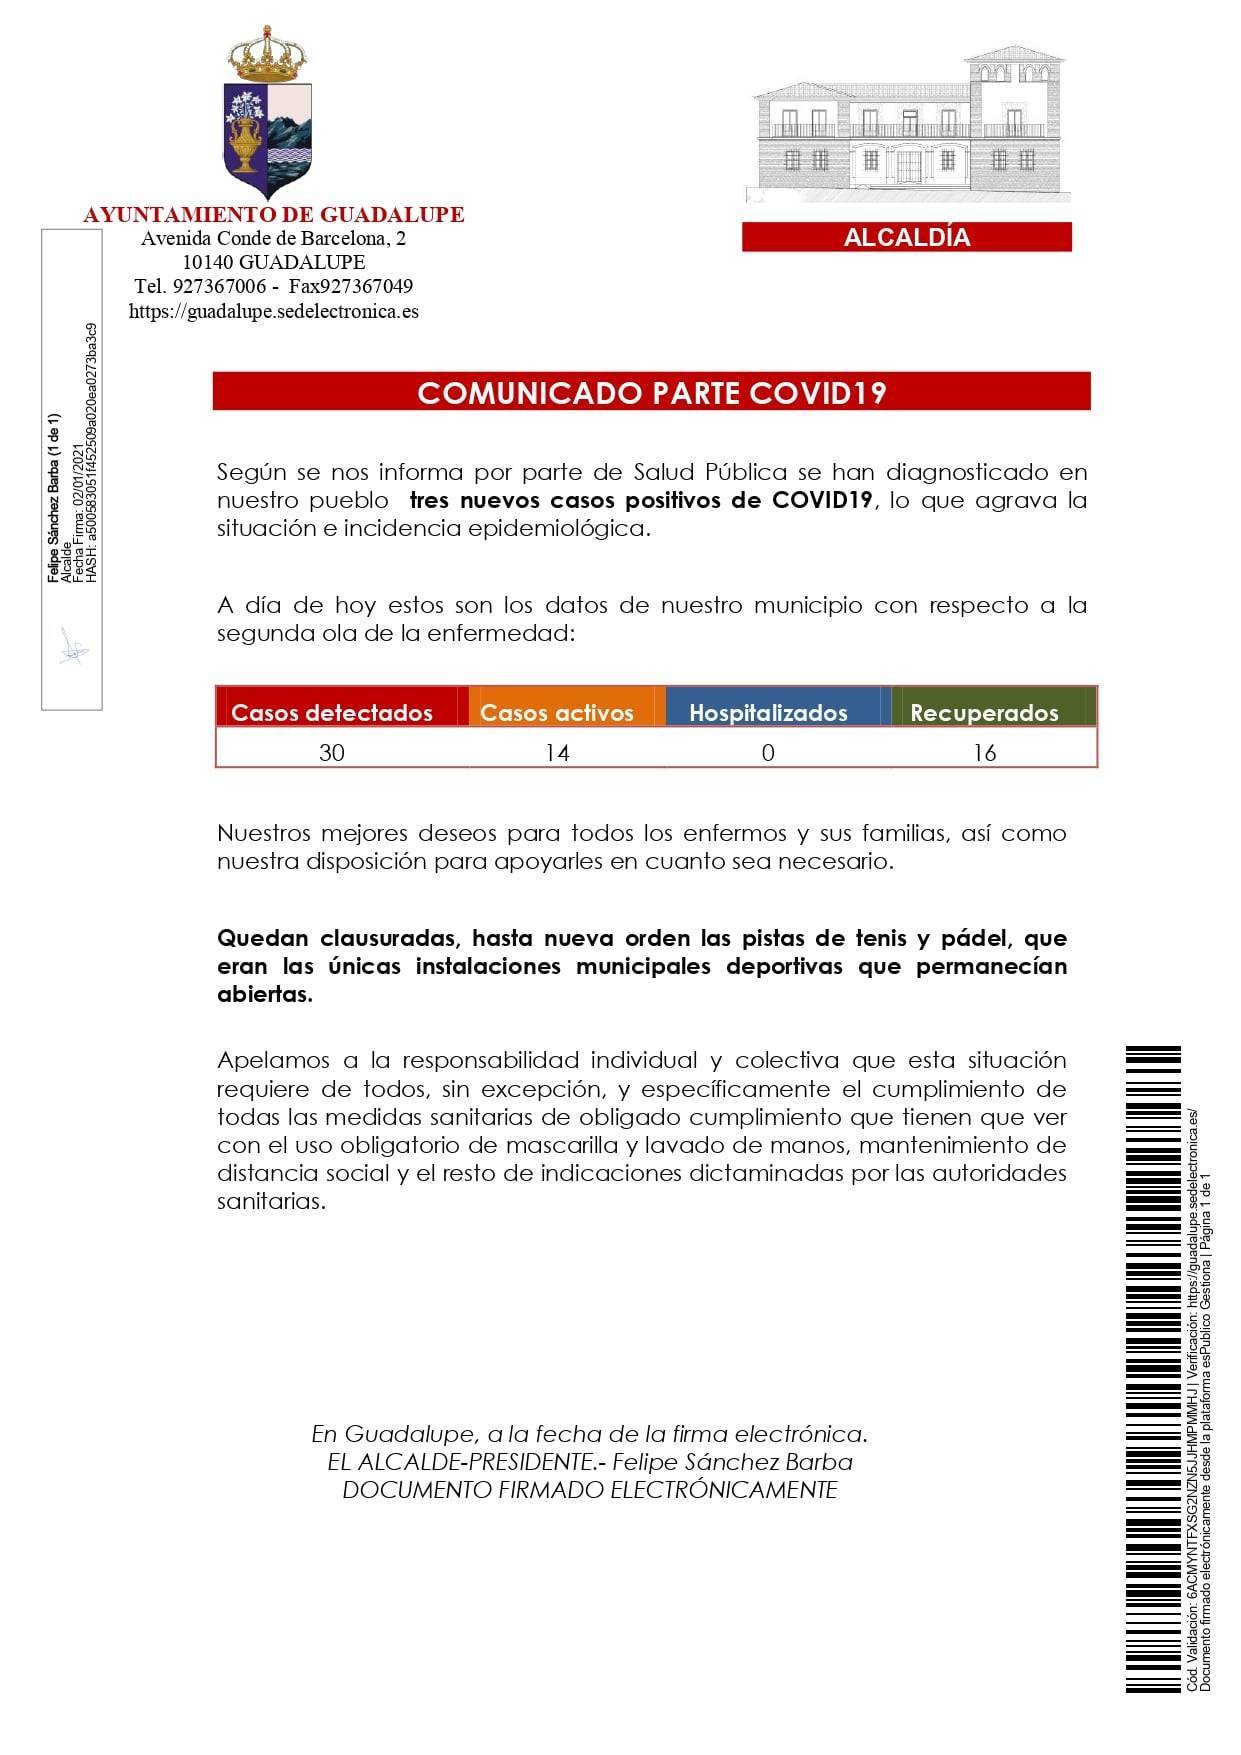 3 nuevos casos positivos de COVID-19 (enero 2021) - Guadalupe (Cáceres)